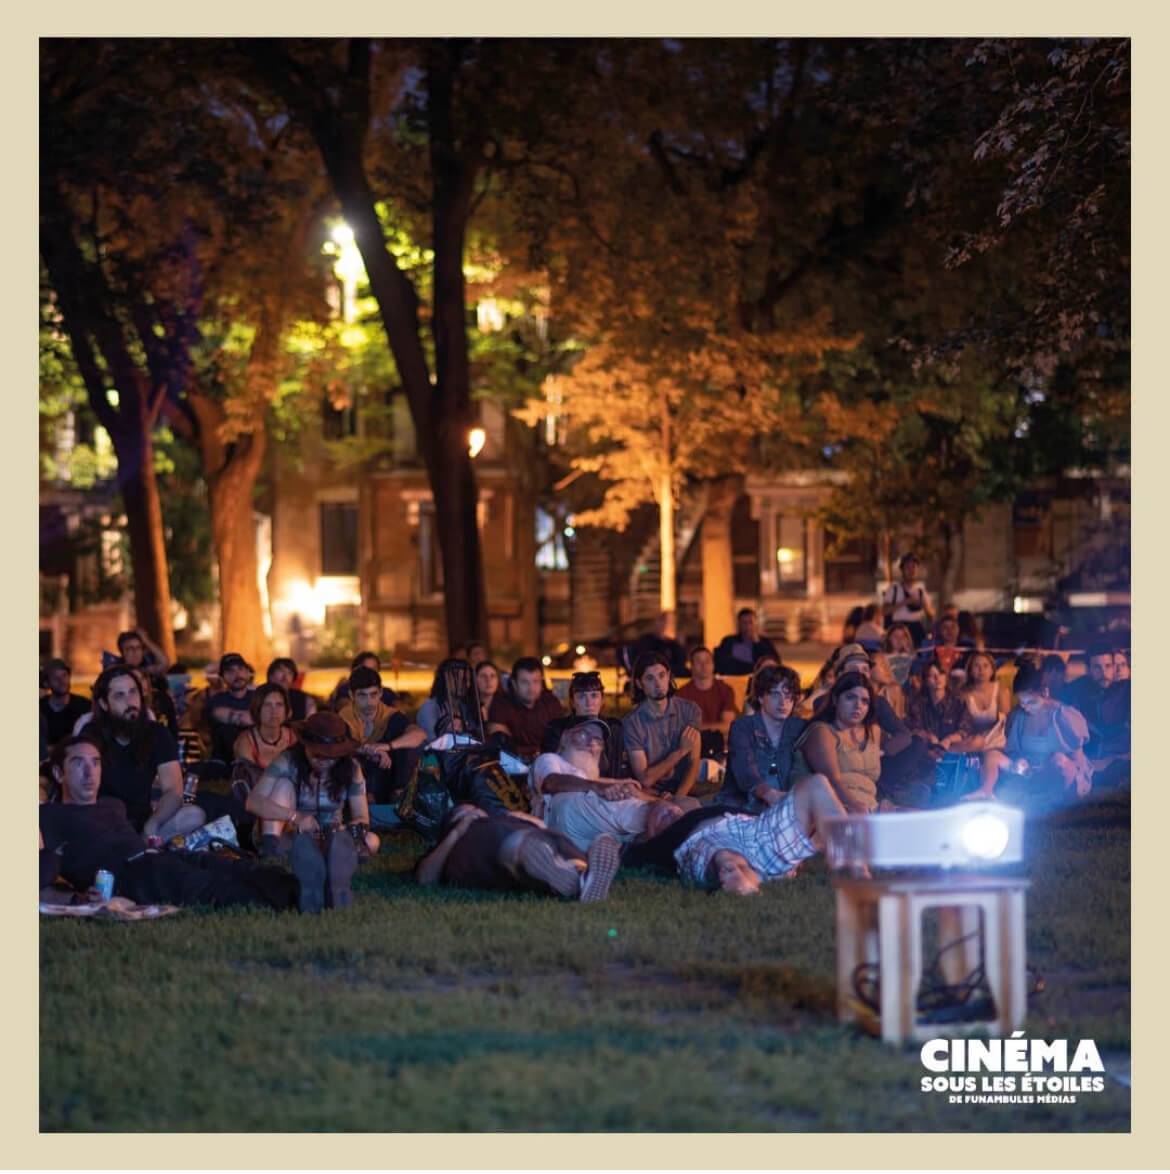 Un public attentif apprécie un film dans un parc au crépuscule, illustrant la communauté et les loisirs.